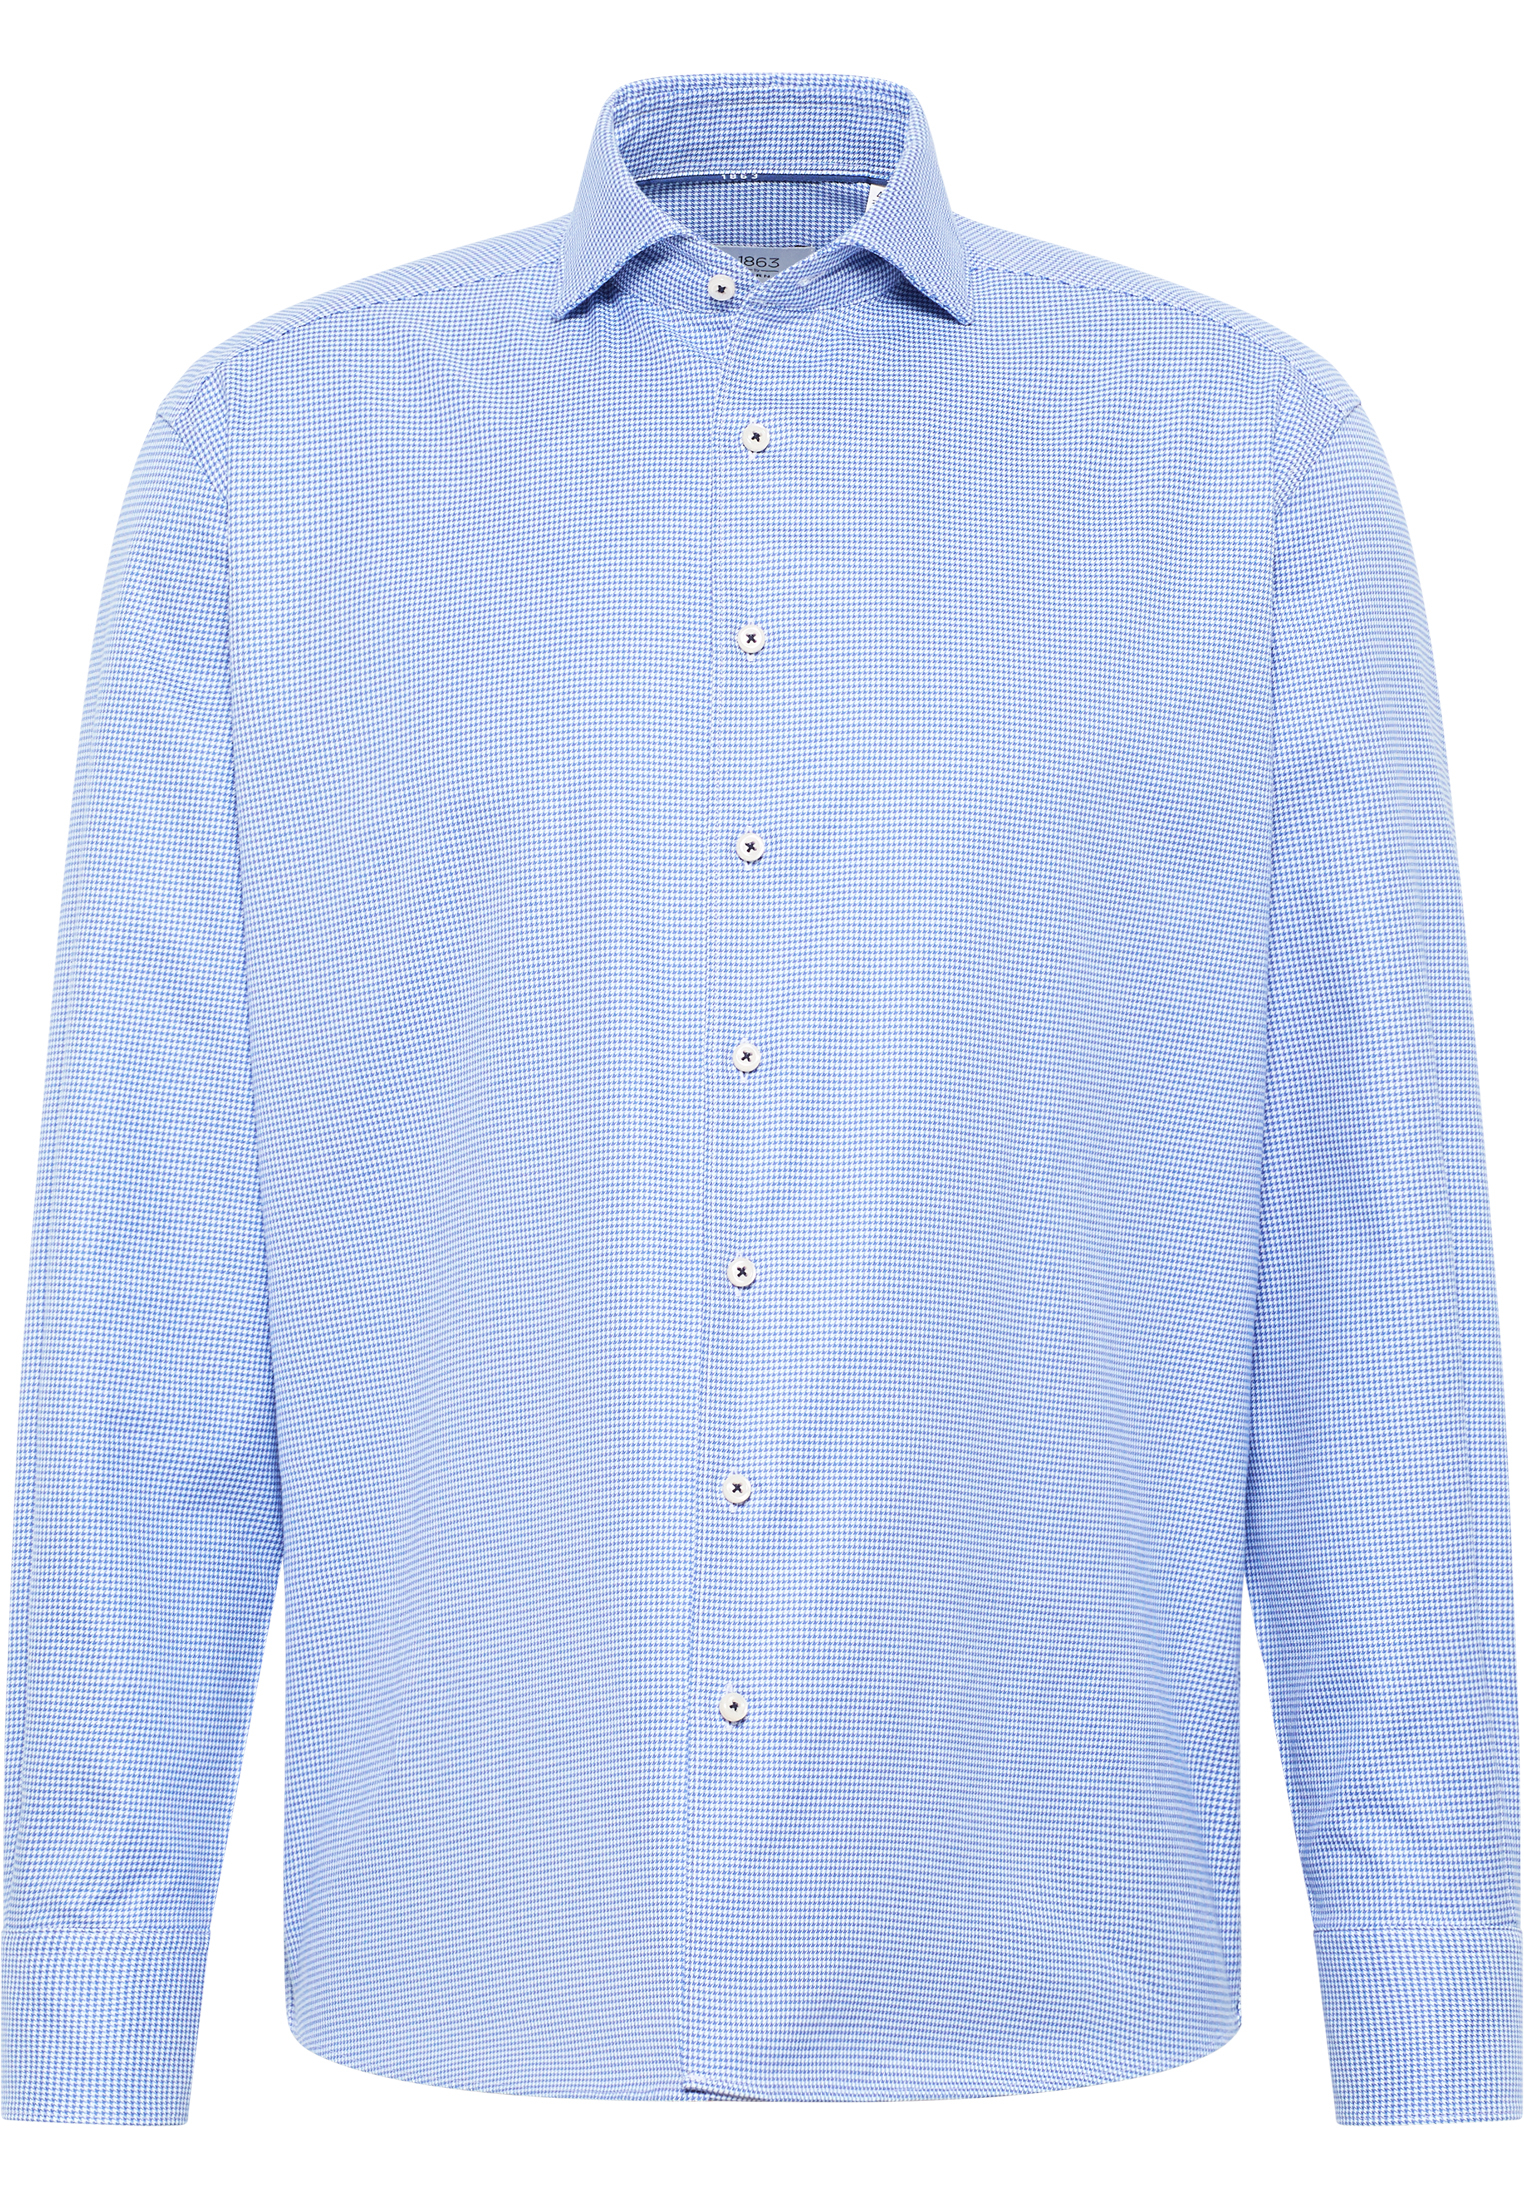 COMFORT FIT Overhemd in blauw geruit